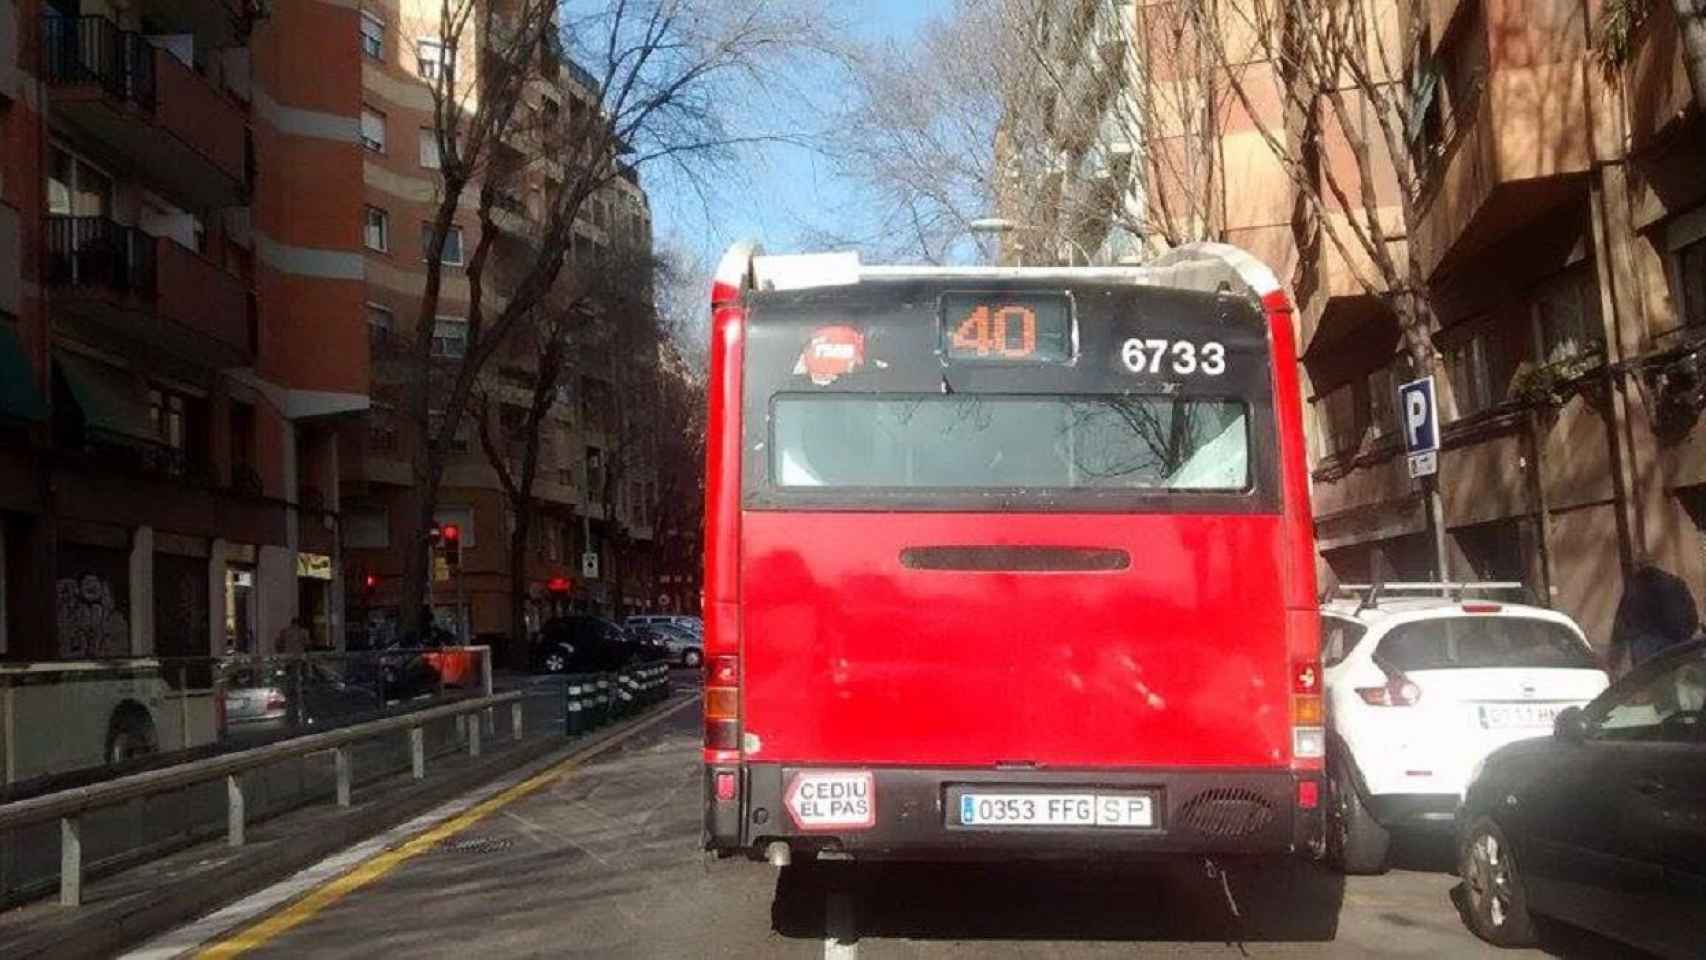 Un autobús de la línea D-40, como el de la imagen, ha provocado el accidente / Aerchivo